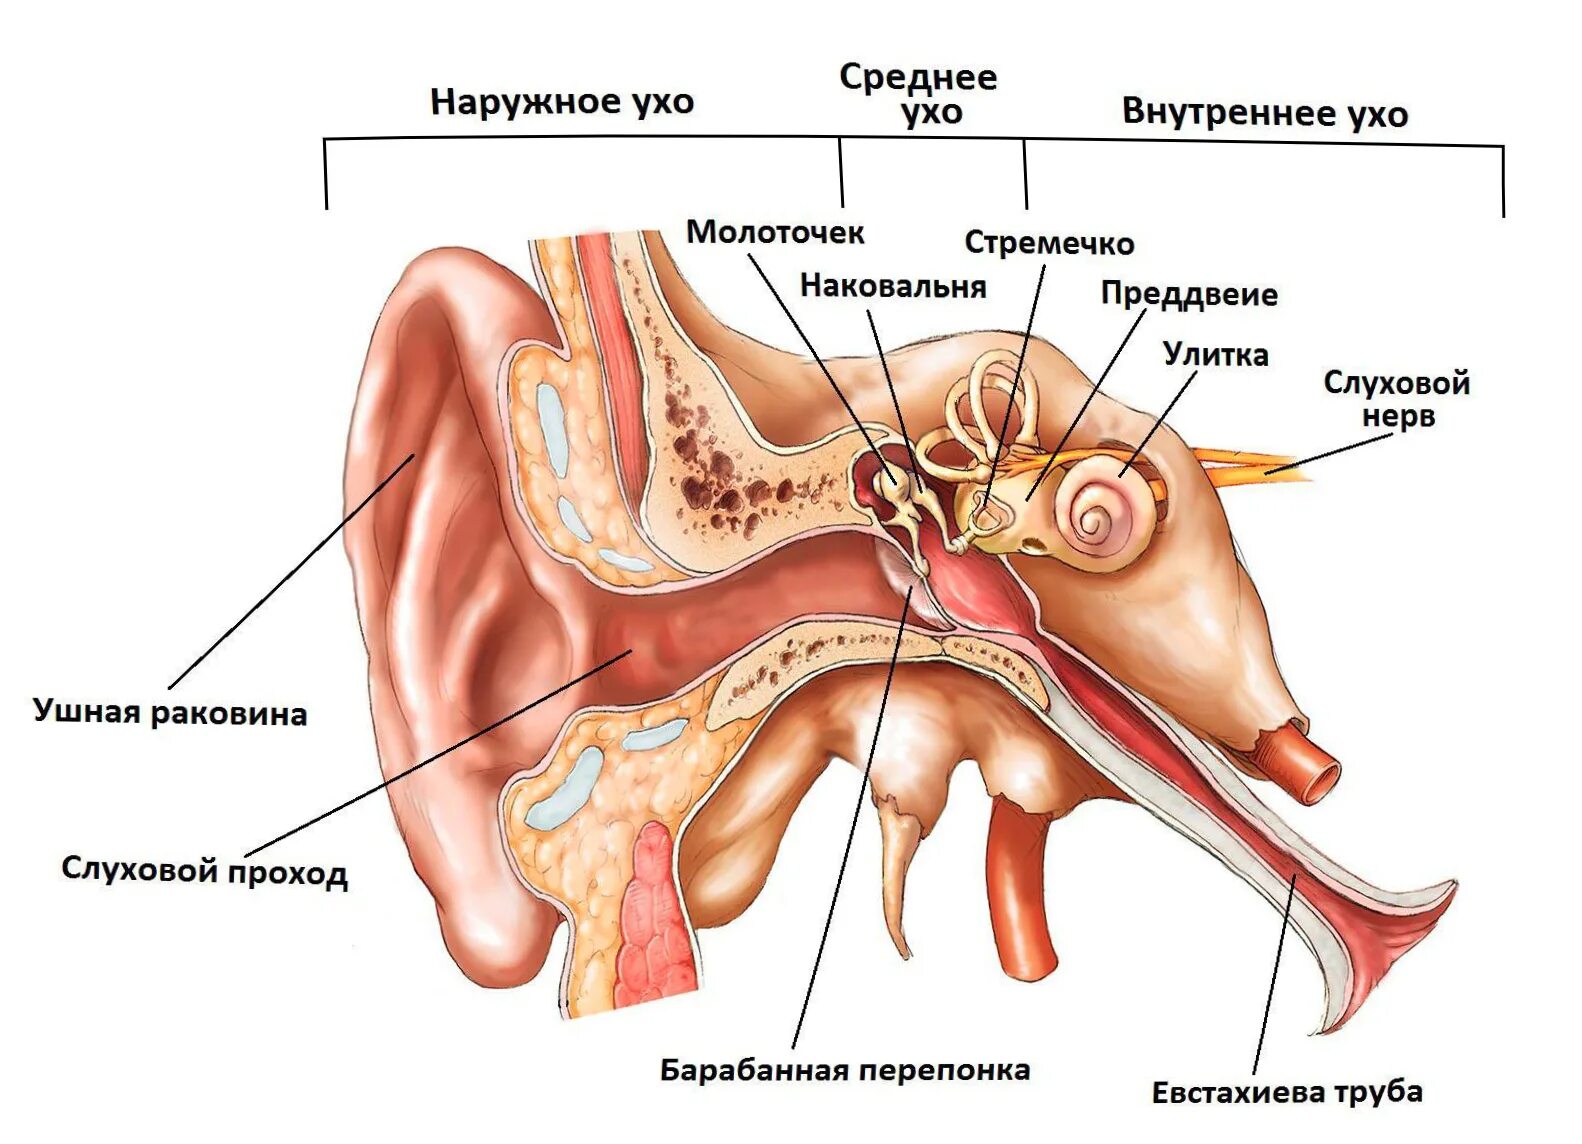 Строение уха человека слуховые косточки. Среднее ухо барабанная перепонка слуховые косточки. Среднее ухо барабанная полость евстахиева труба. Анатомия и физиология уха слуховой анализатор. Орган слуха слуховая труба